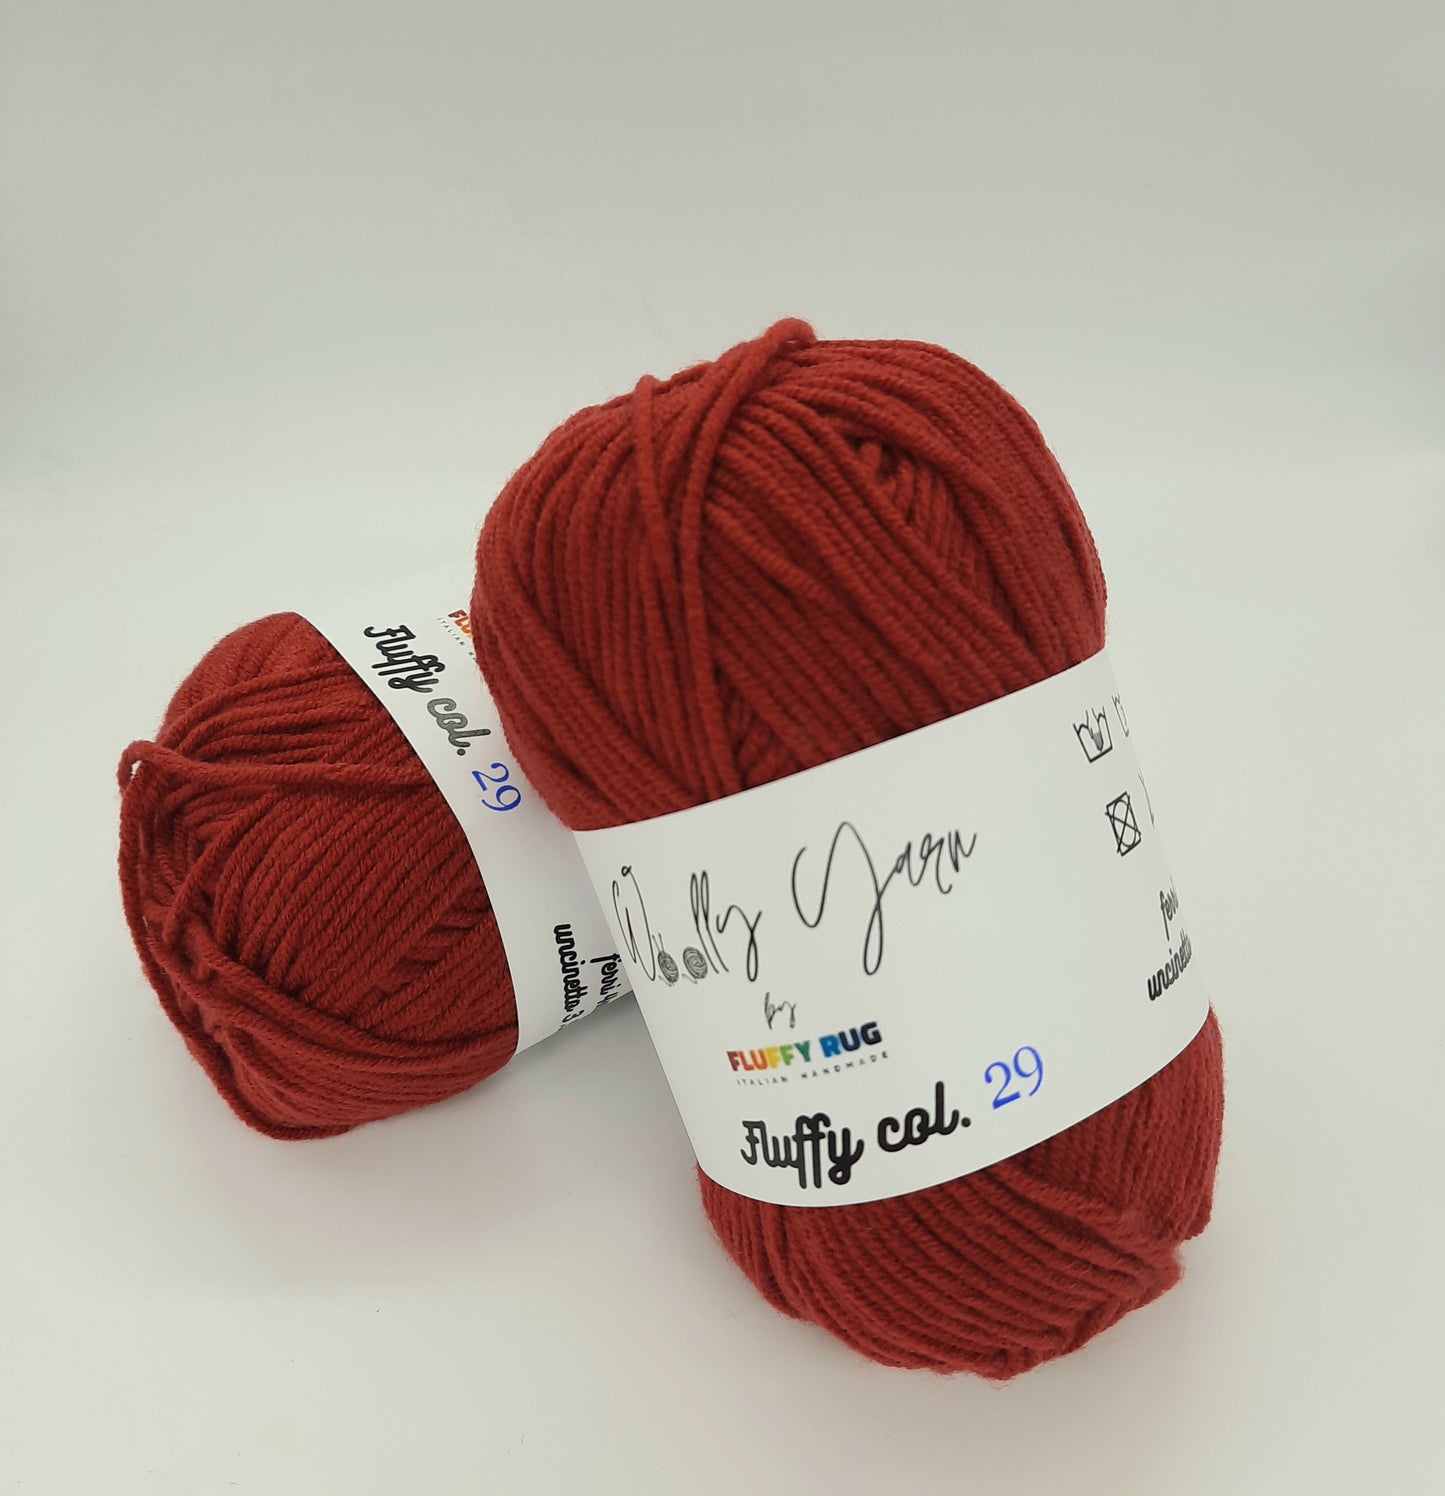 Fluffy Ruby Red, Baby Yarn N.29